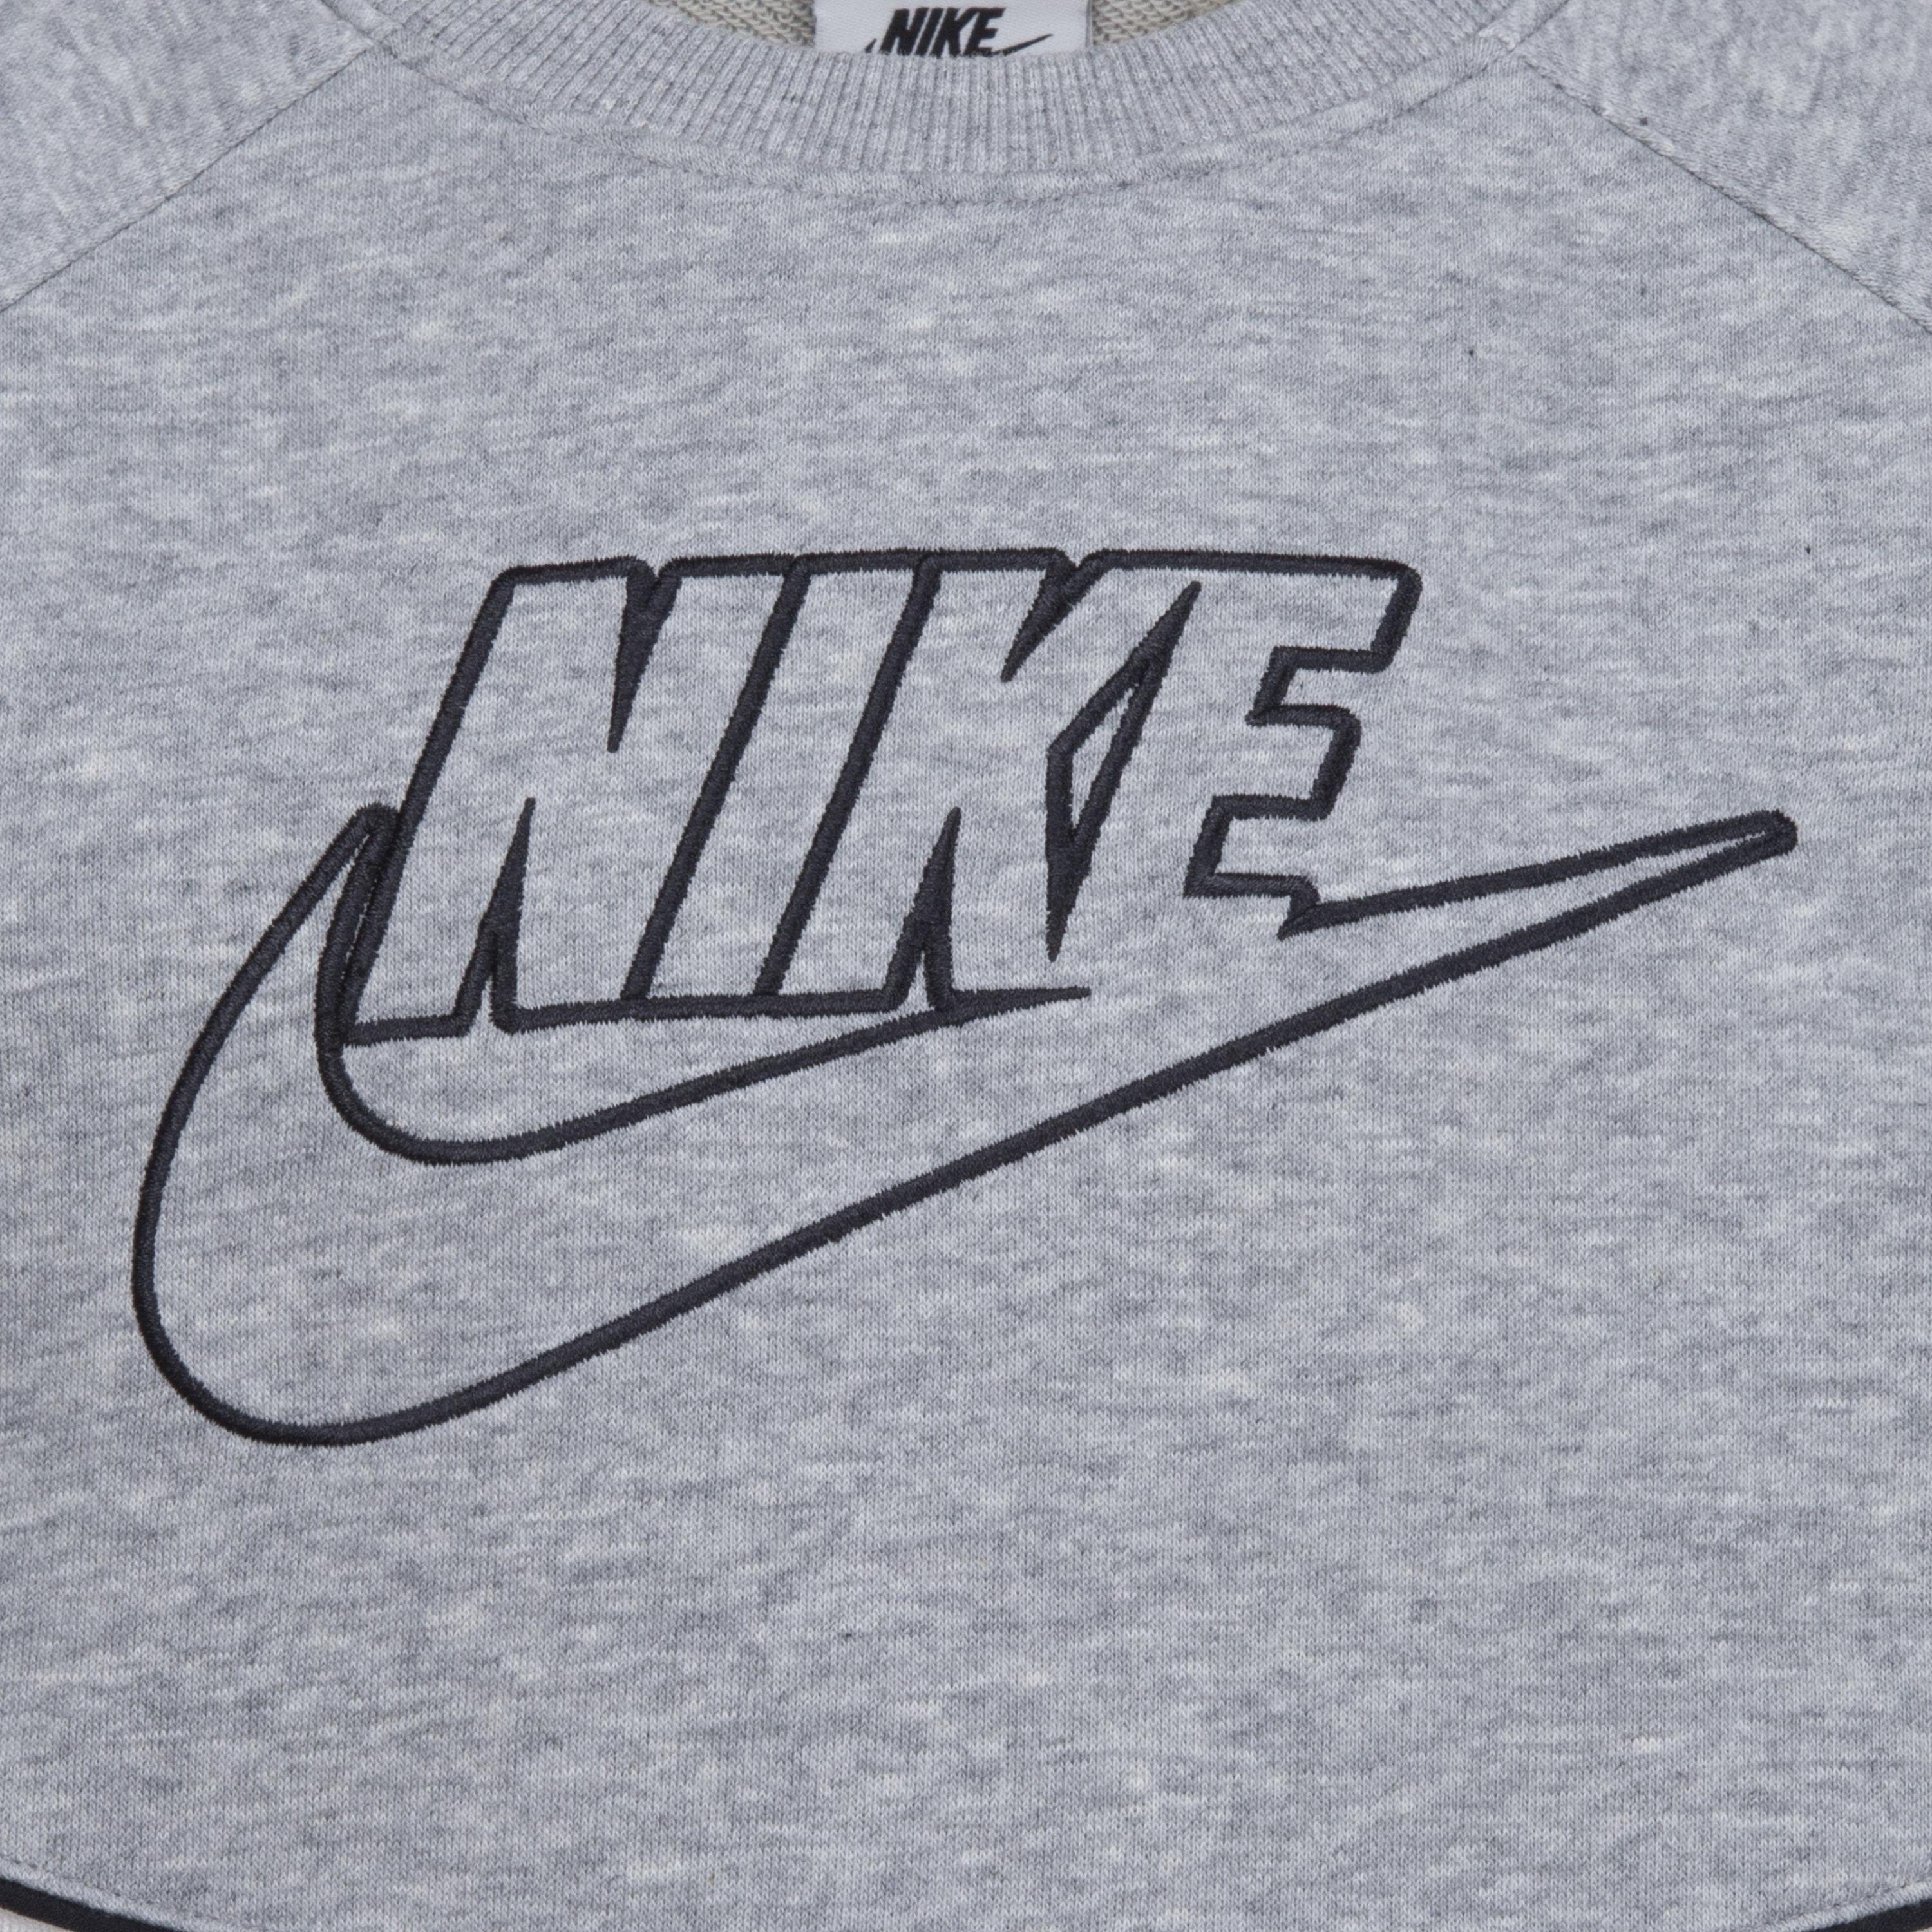 (Set, Jogginganzug grey Sportswear Nike 2-tlg)